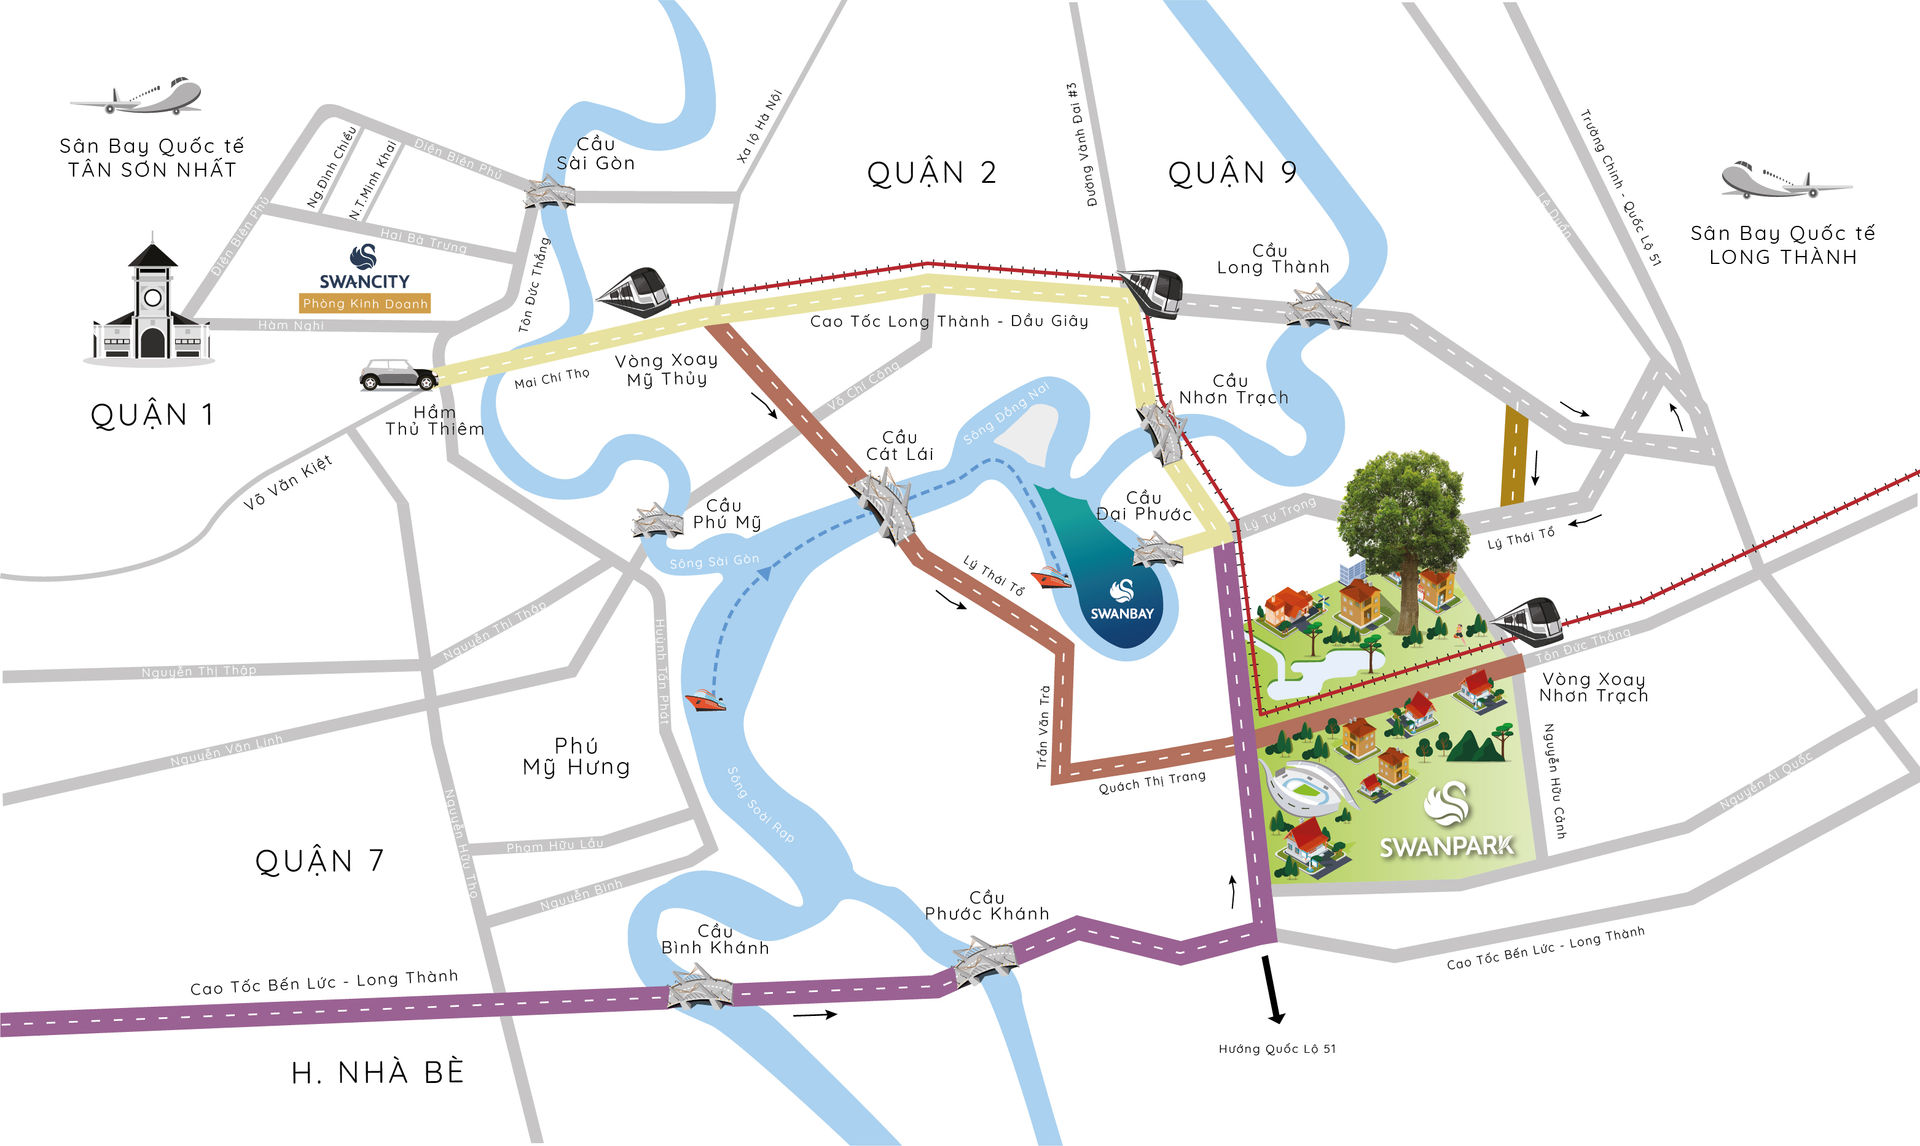   Bản đồ liên kết giao thông từ Nhơn Trạch đến Trung tâm TP.HCM.  